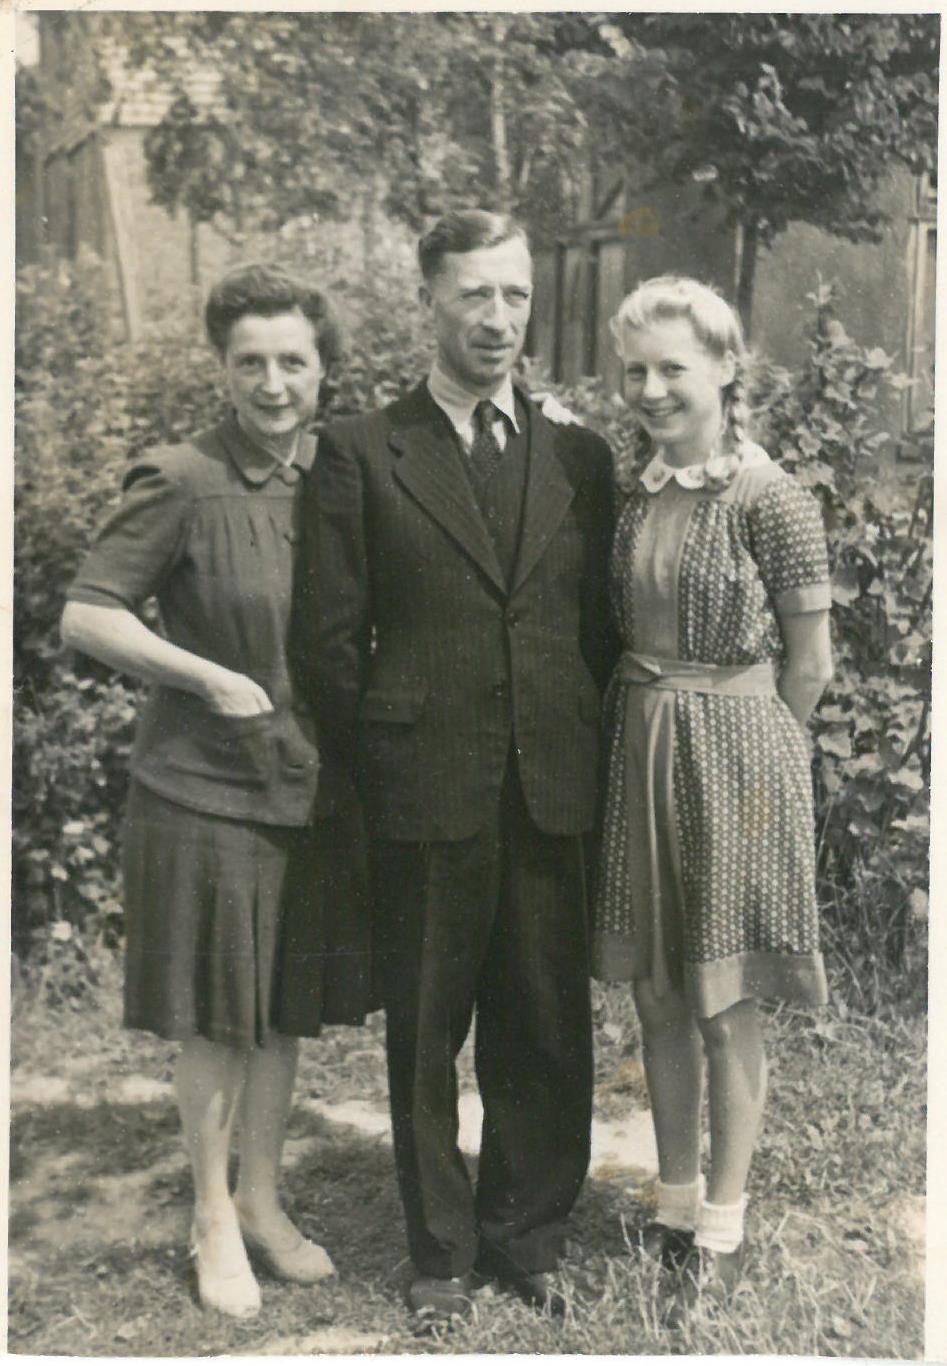 Kazio Balčiūno draugas su šeima. Kitoje fotografijos pusėje yra užrašas: „Mielam Kaziui Balčiūnui / nuo Igno [neįskaitoma pavardė] ir šeimos. / 1948 metai / Braunschweig / Vokietija.“